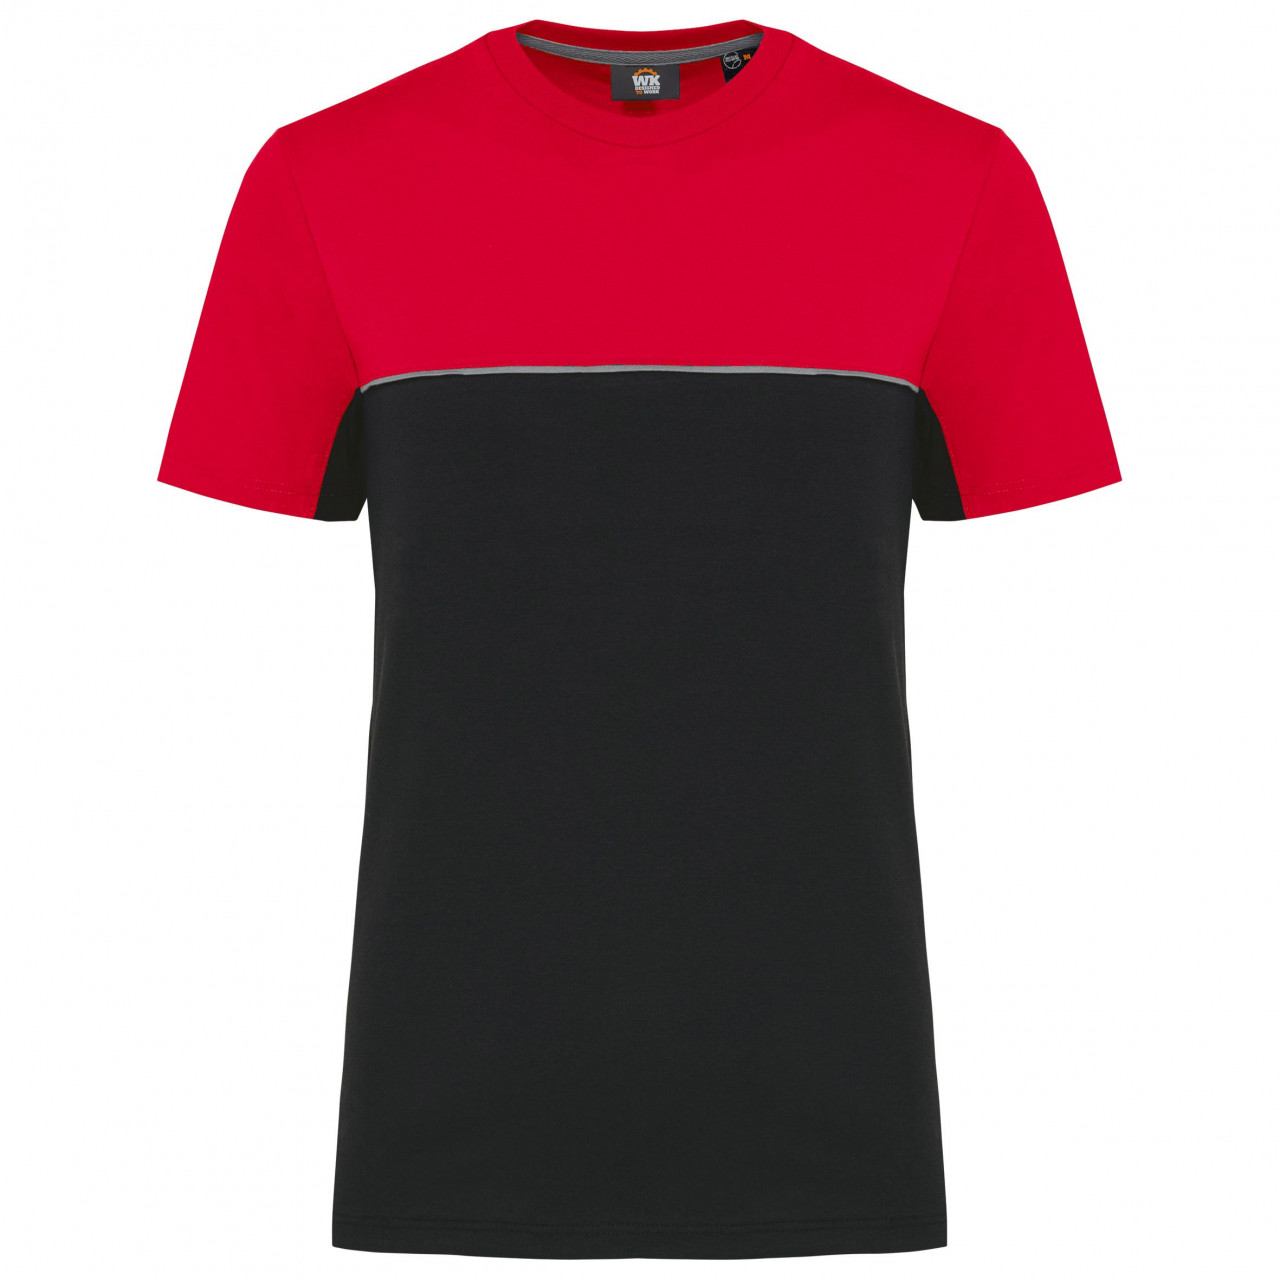 Pracovní triko dvoubarevné WK - černé-červené, 4XL